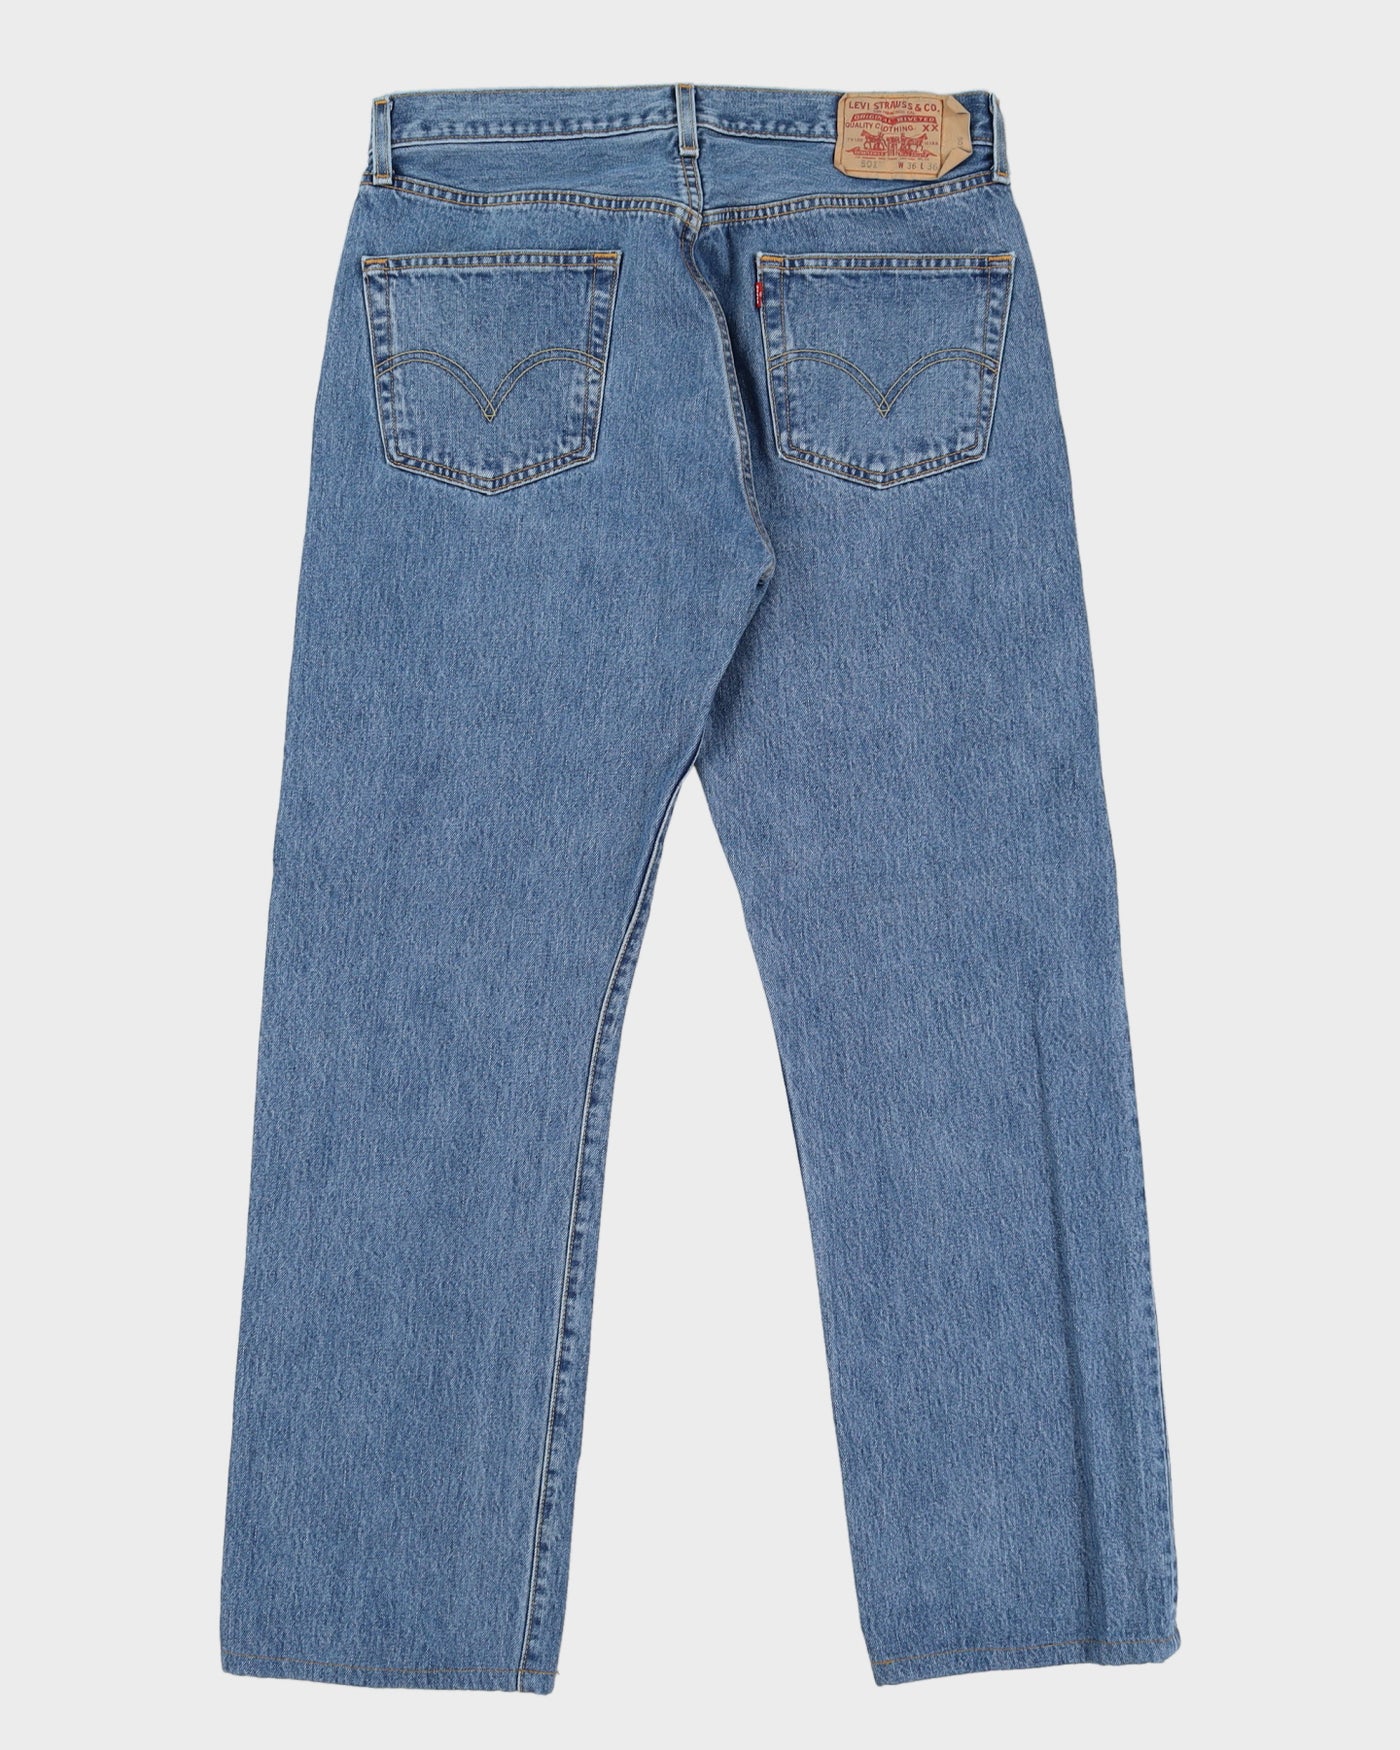 Vintage 90s Levi's 501 Blue Jeans - W34 L32